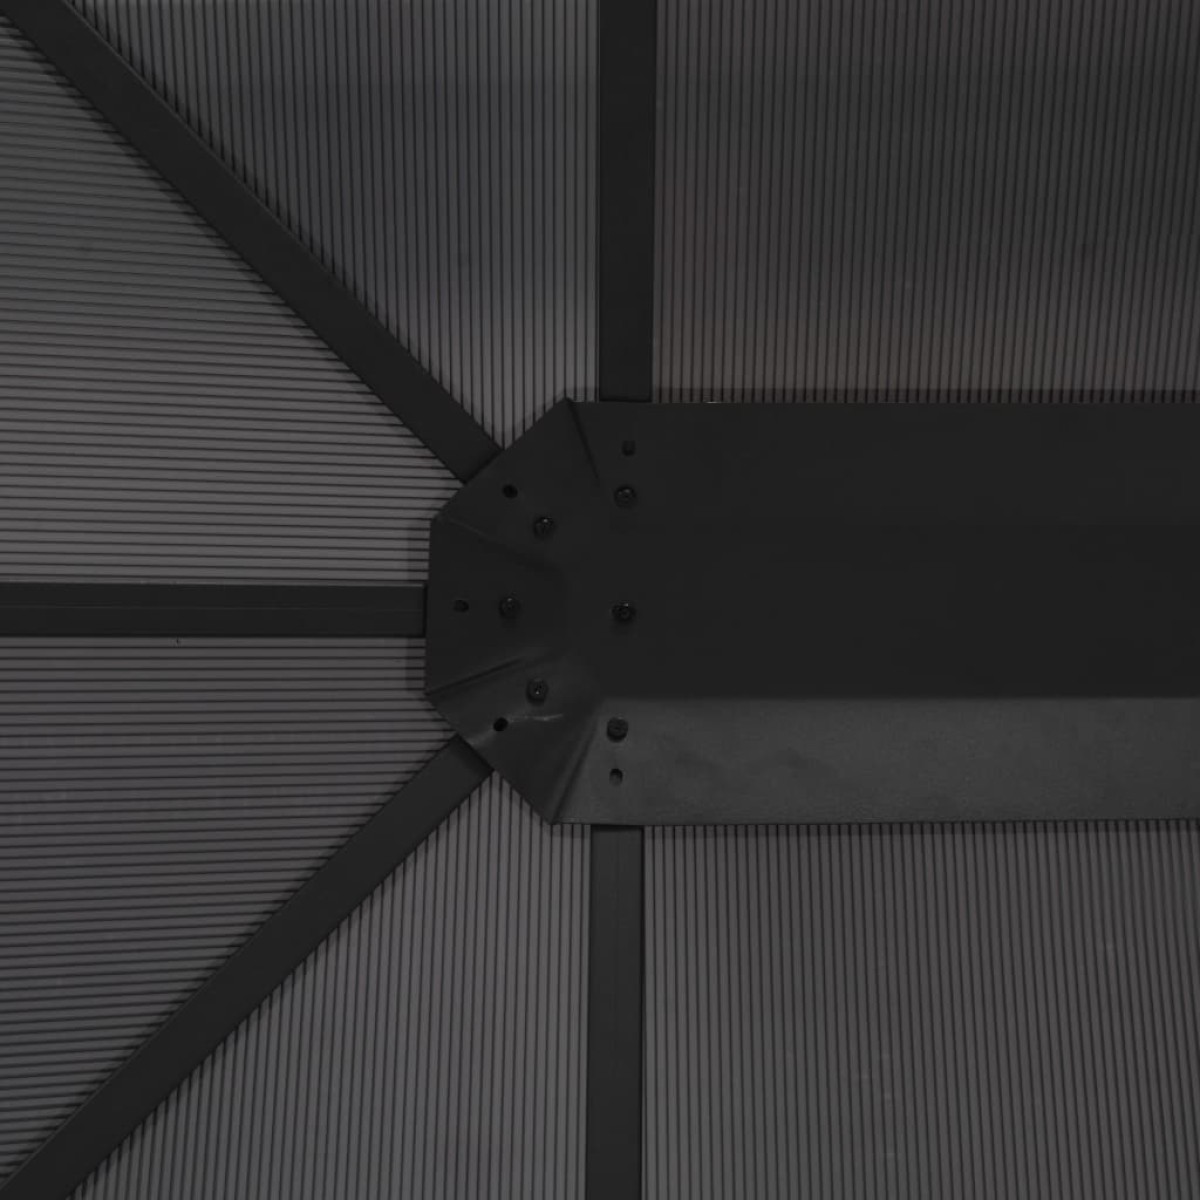 vidaXL Κιόσκι με Οροφή Μαύρο 4 x 3 x 2,6 μ. από Αλουμίνιο